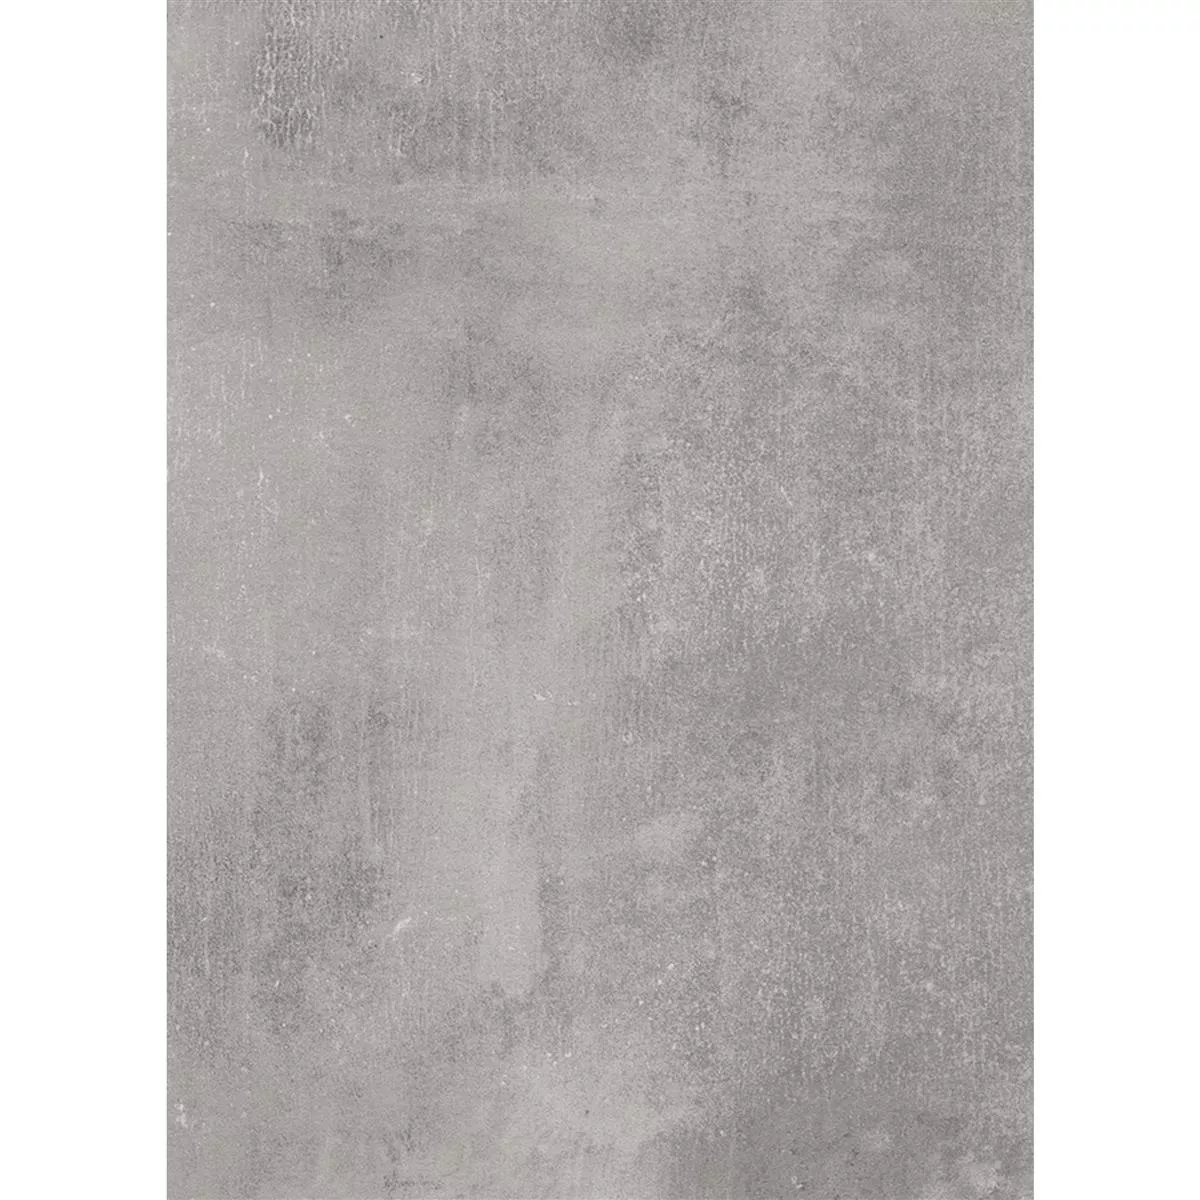 Ploče Za Terasu Mossburg Imitacija Kamen Svjetlosiva 60x120cm